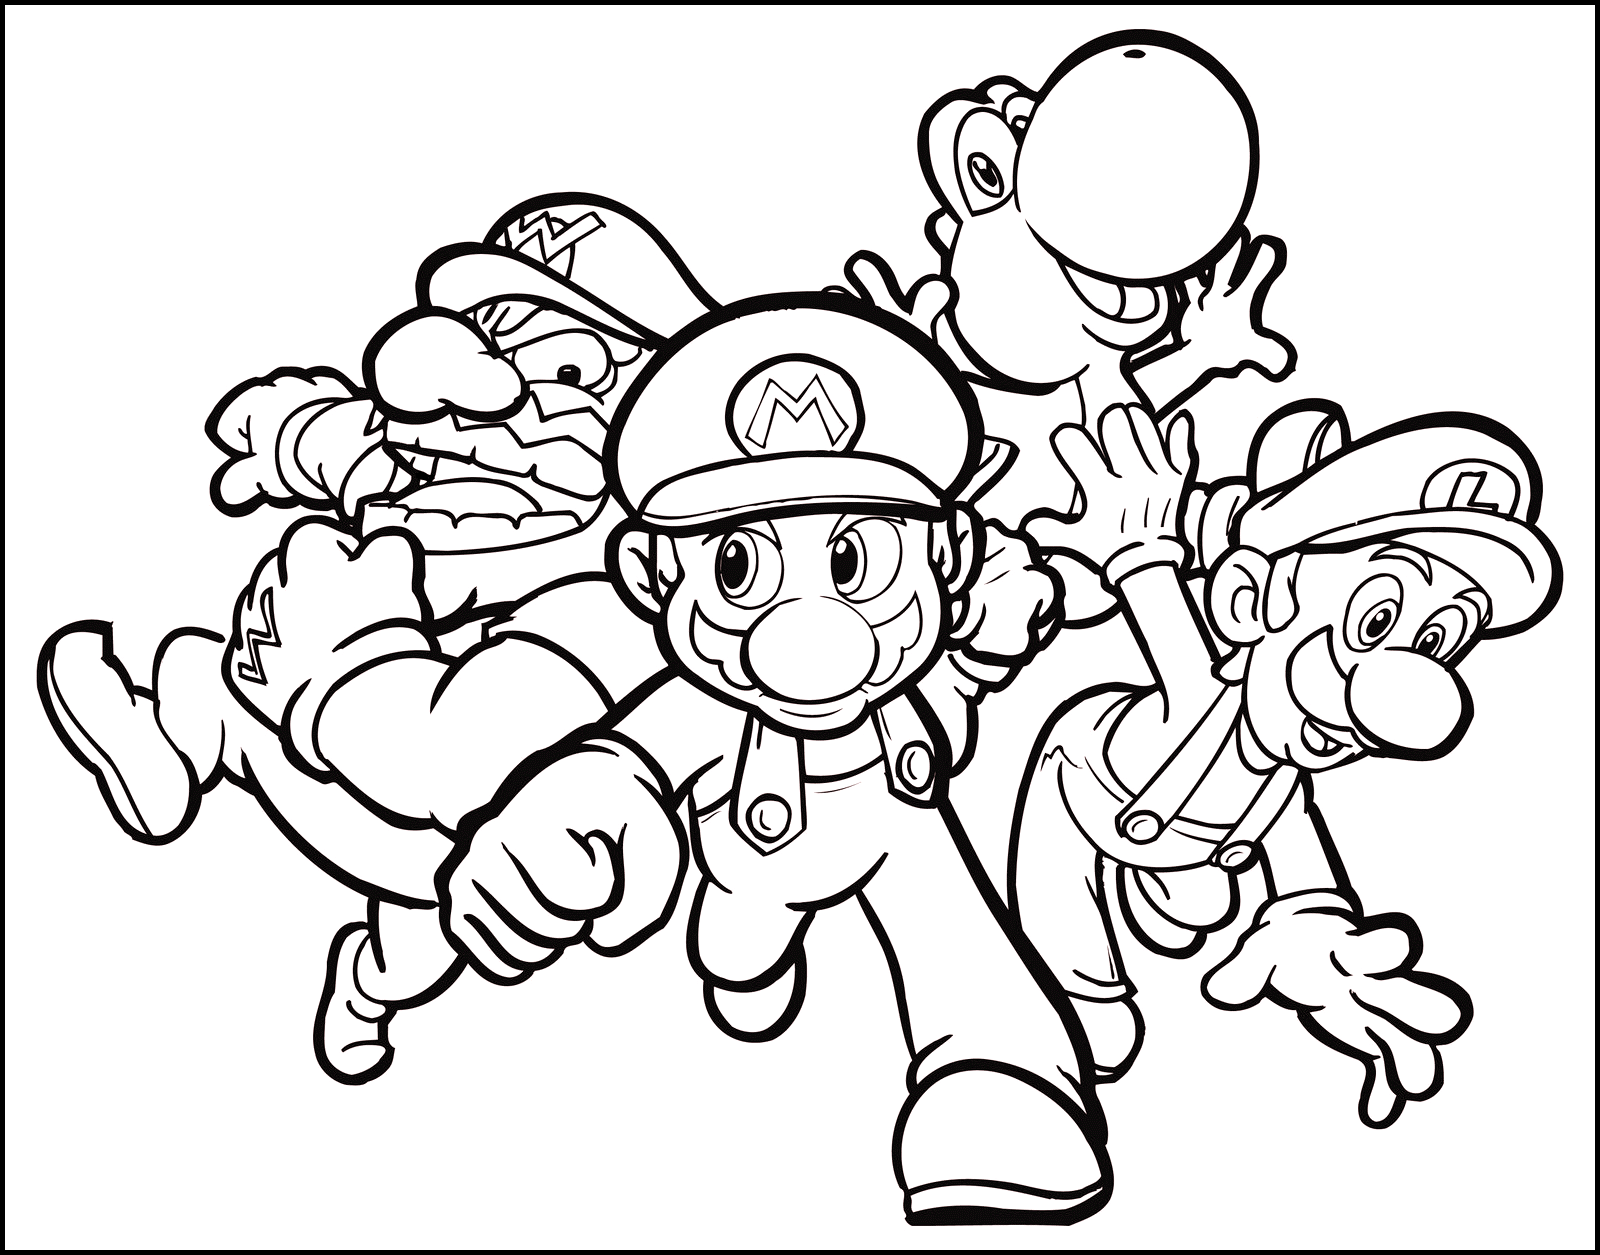 Mario , Luigi , Wario and Yoshi   Mario Bros Kids Coloring Pages